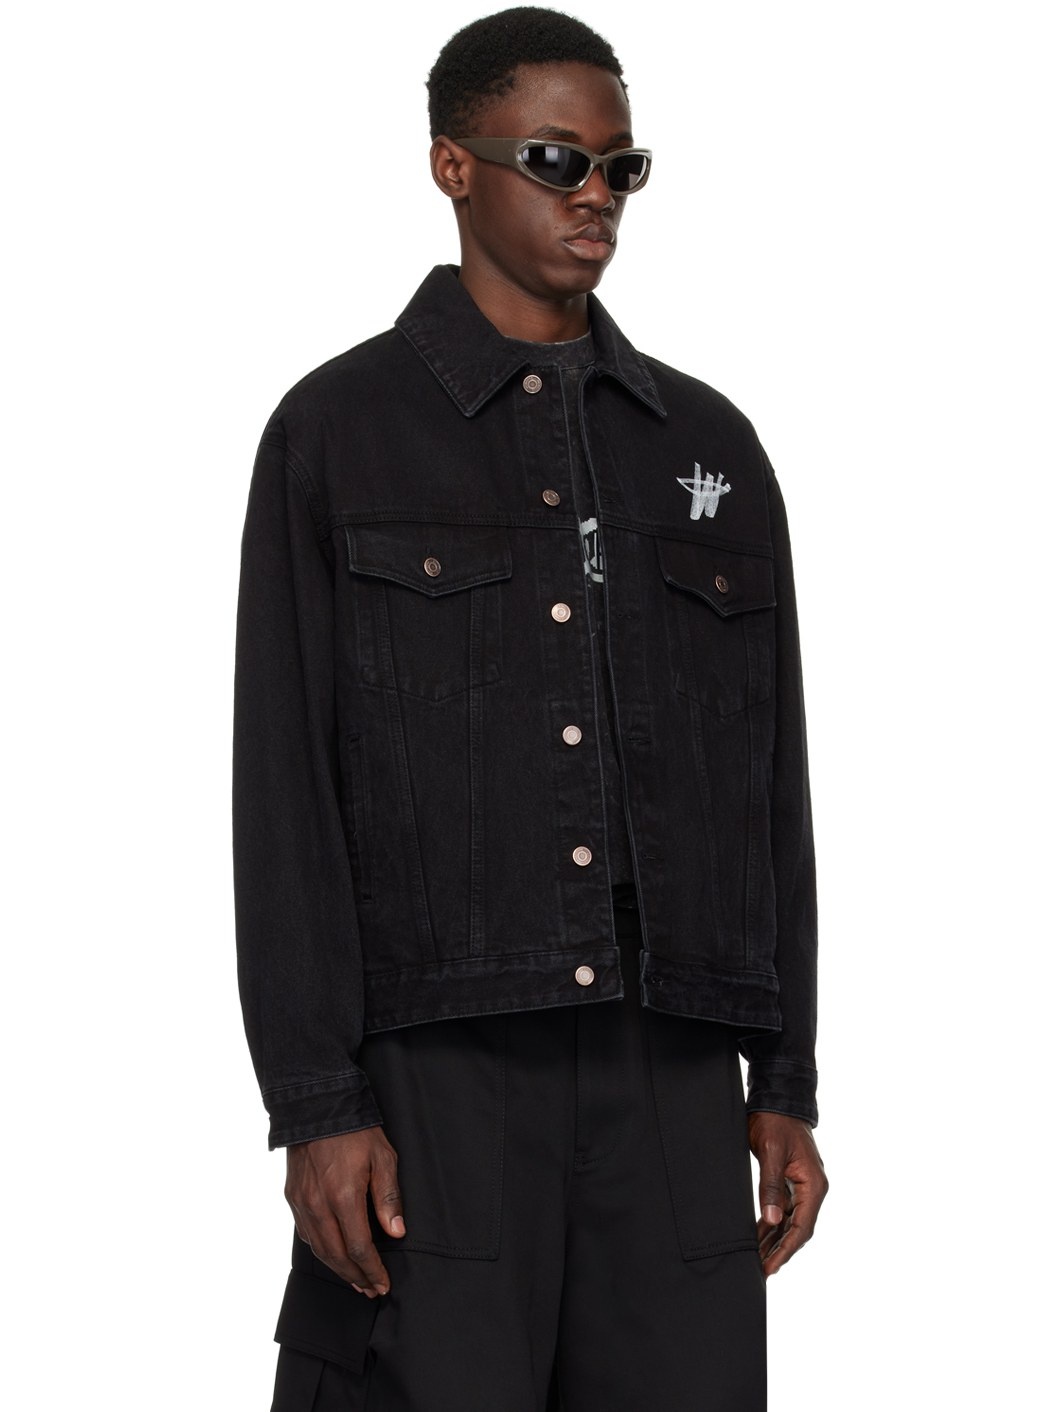 Black Printed Denim Jacket - 2